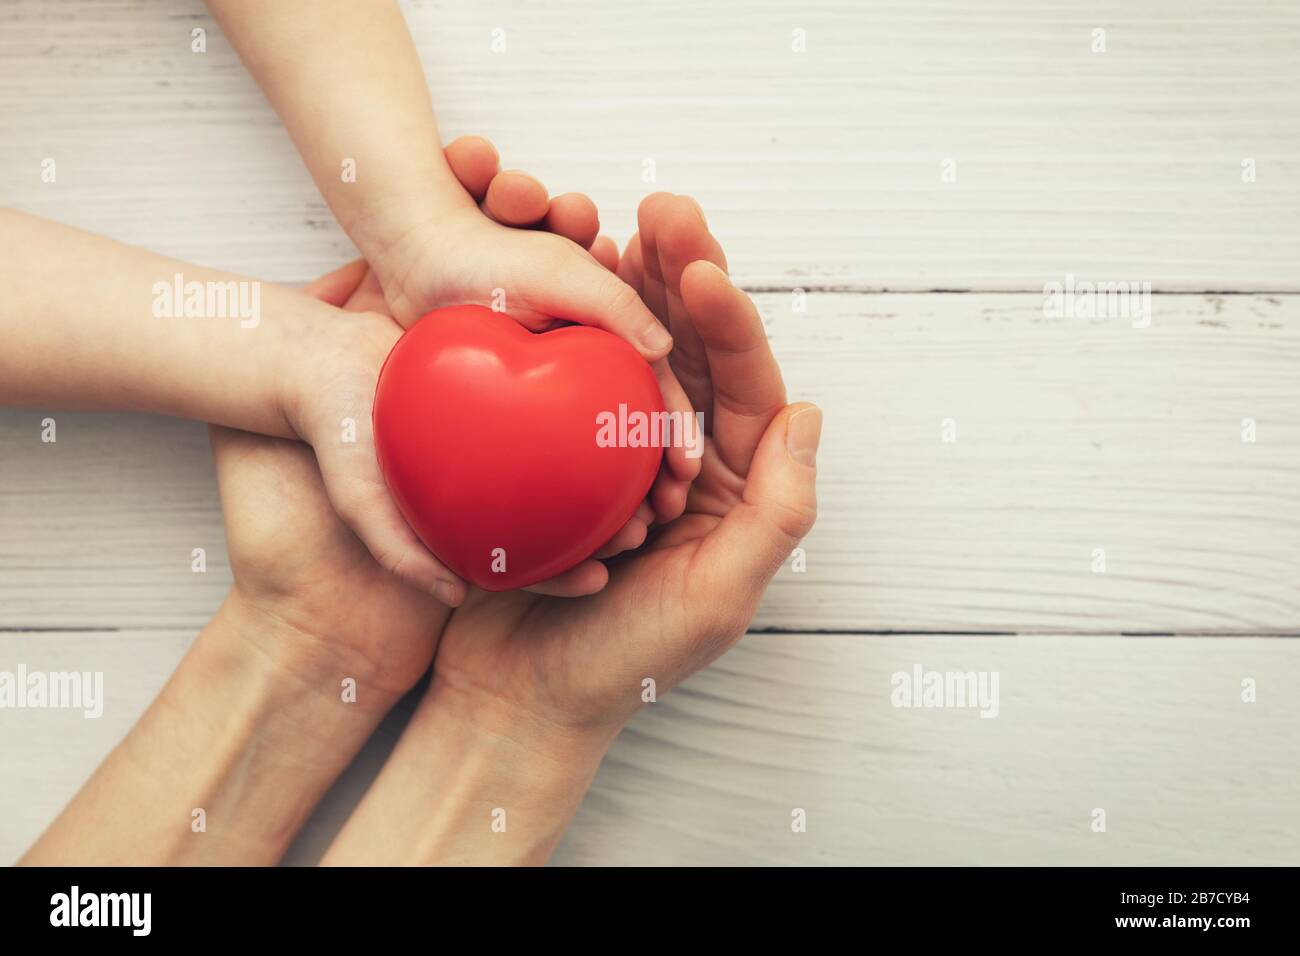 cuore rosso in bambino e madre passa su sfondo di legno bianco. concetto di amore, carità, empatia Foto Stock